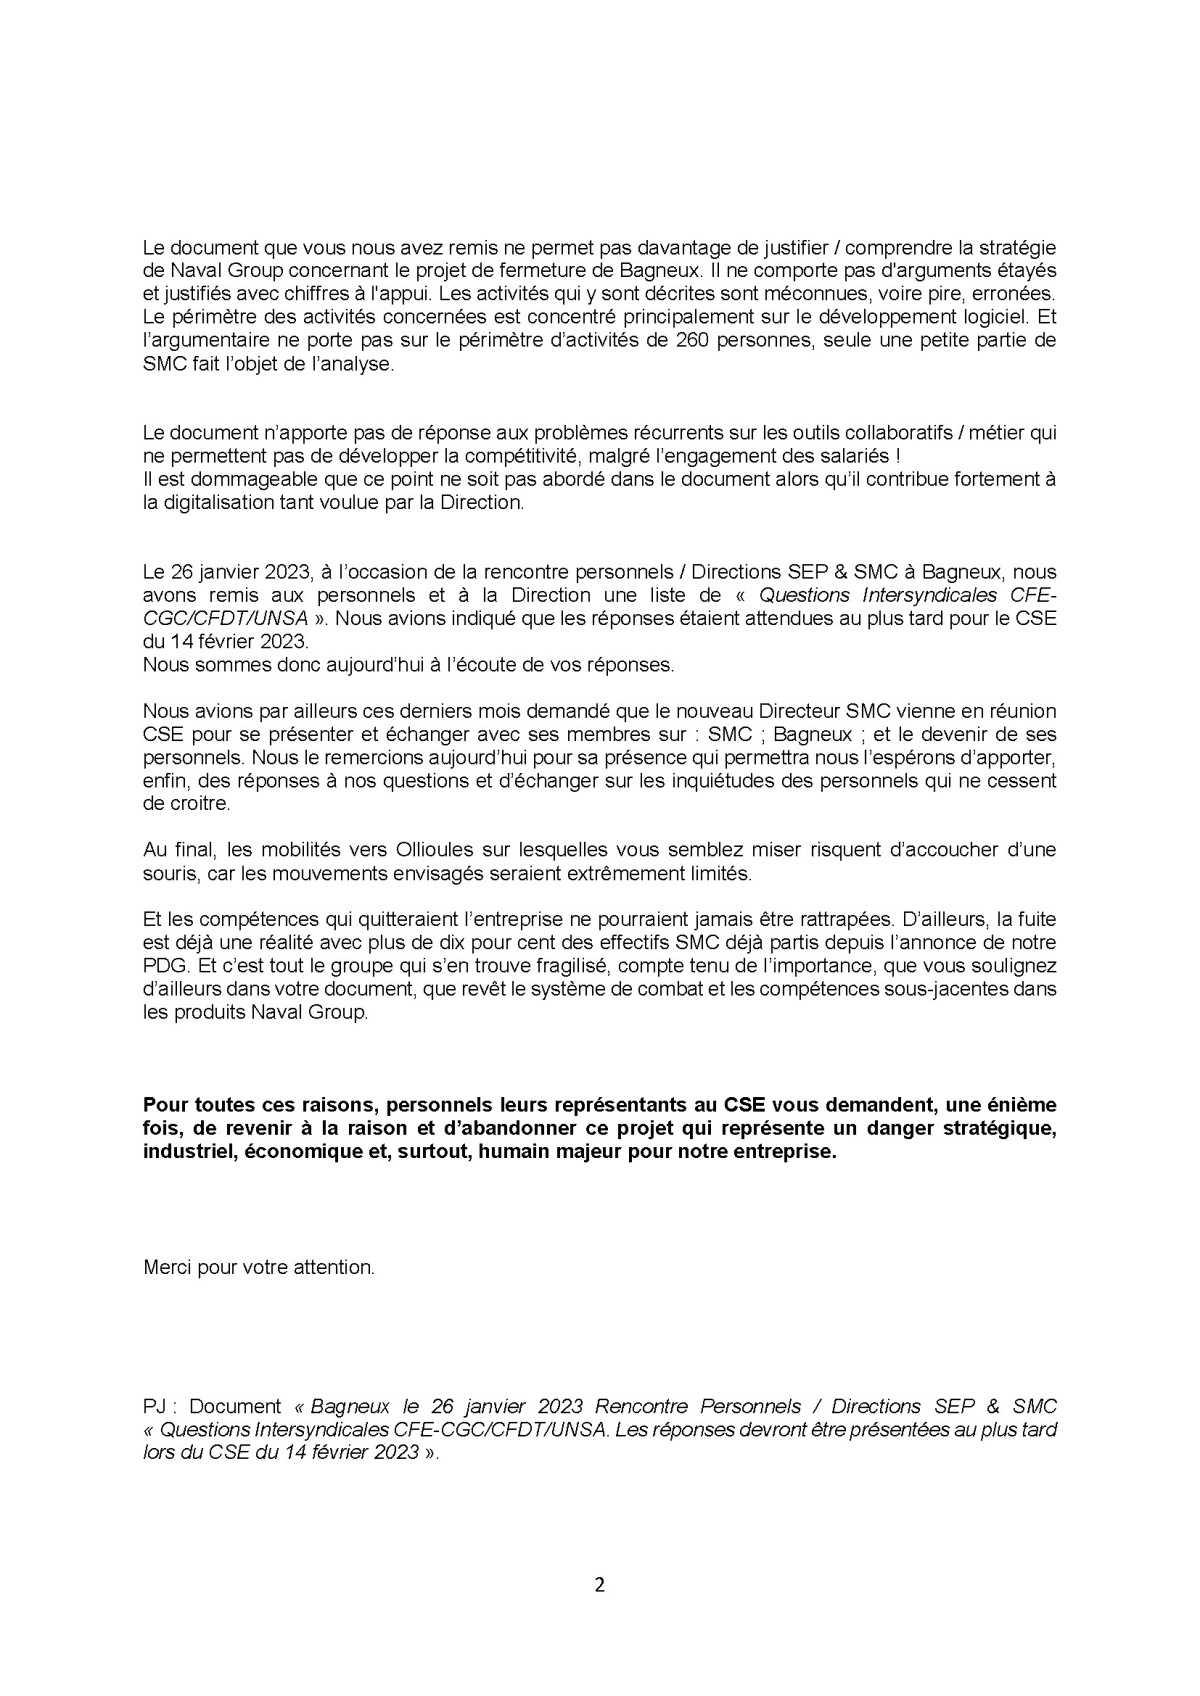 CSE Extra Région Parisienne - Réunion du 14 février 2023 - Déclaration Liminaire